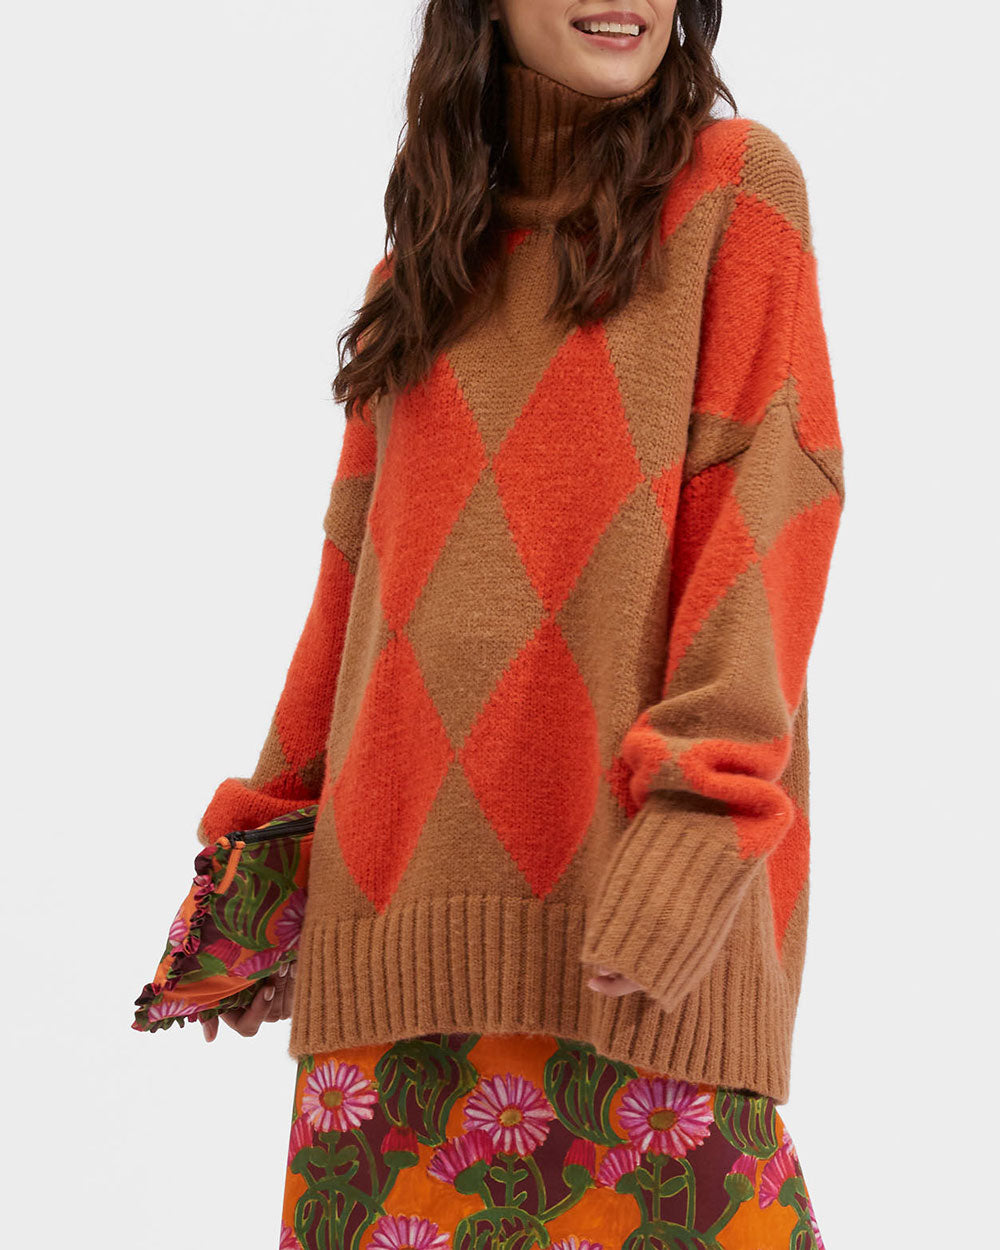 Camel and Orange Argyle Turtleneck Sweater